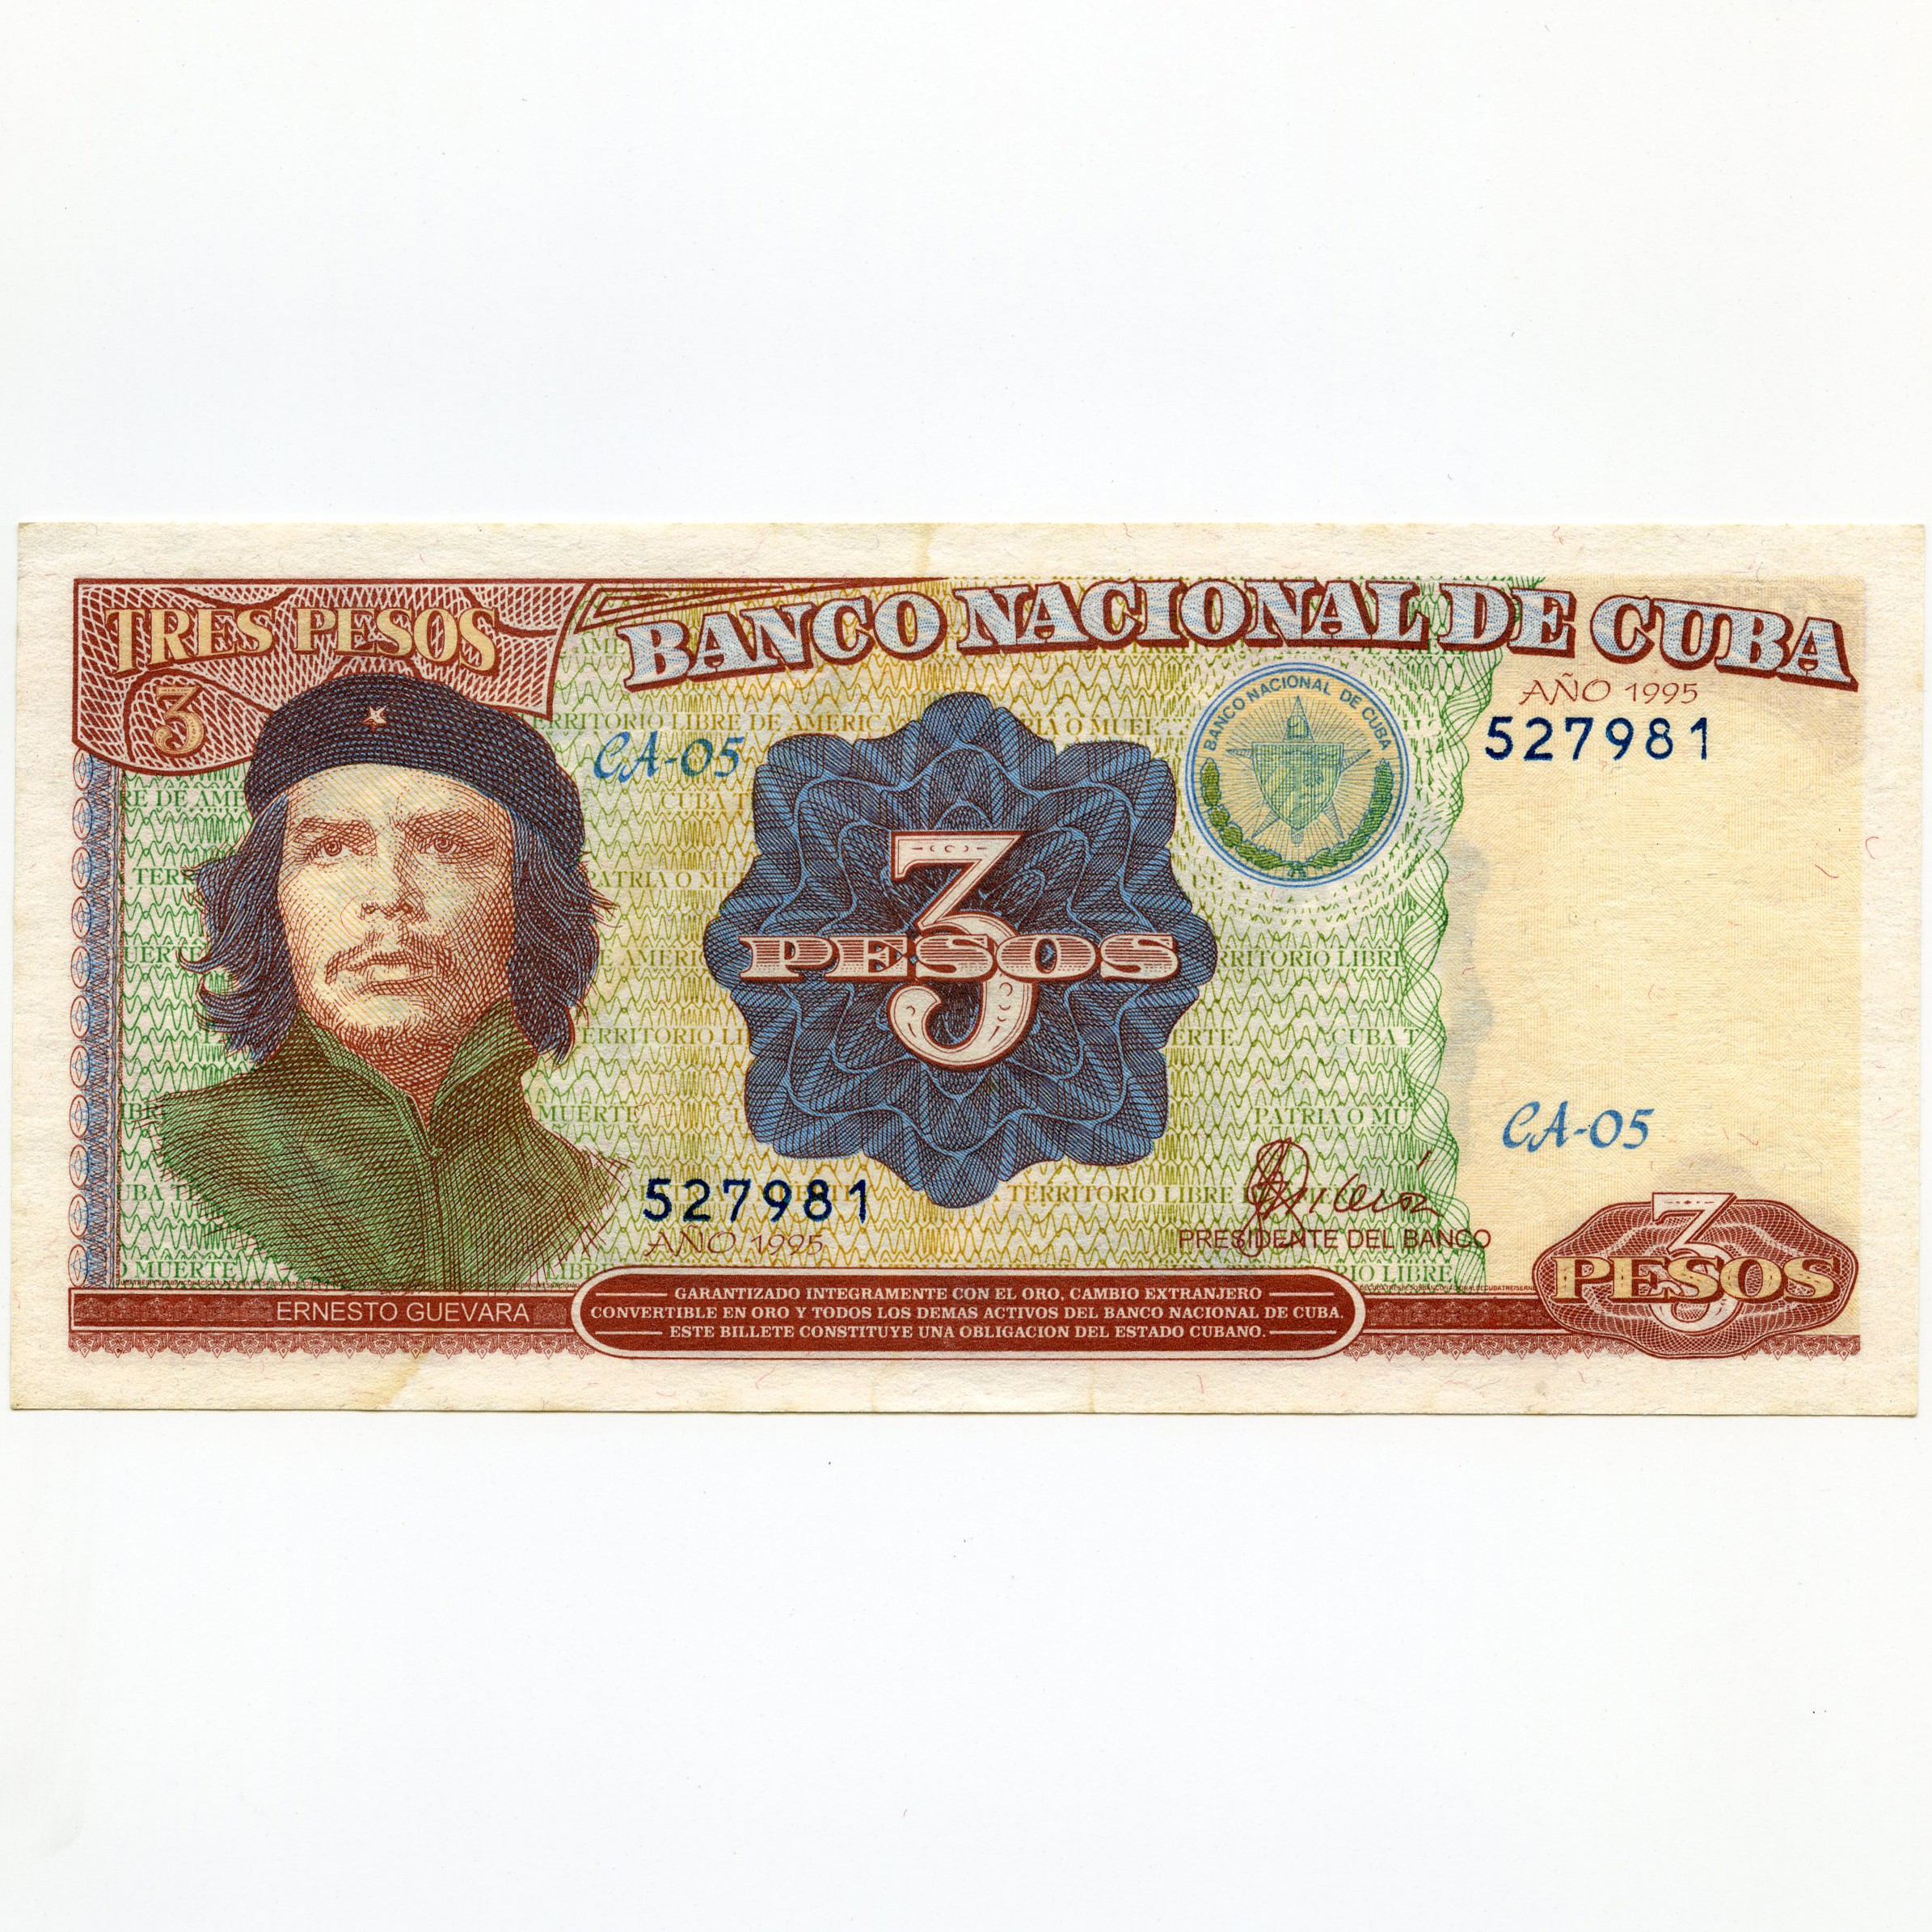 Cuba - 3 Pesos - CA-05 527981 avers